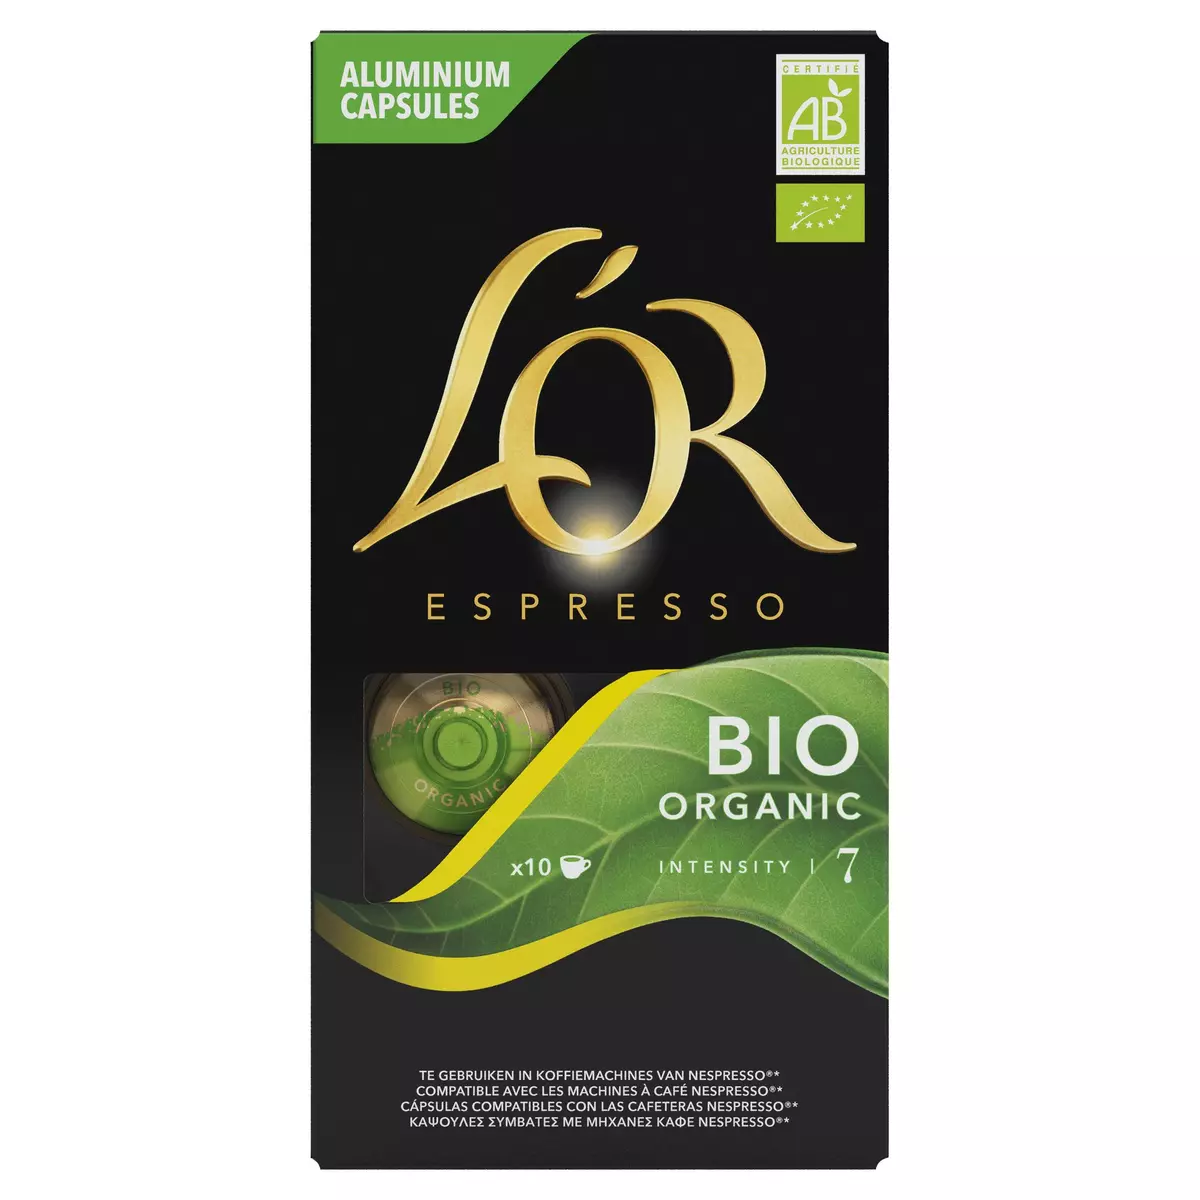 L'OR ESPRESSO Capsules de café espresso bio intensité 7 compatibles Nespresso 10 capsules 52g